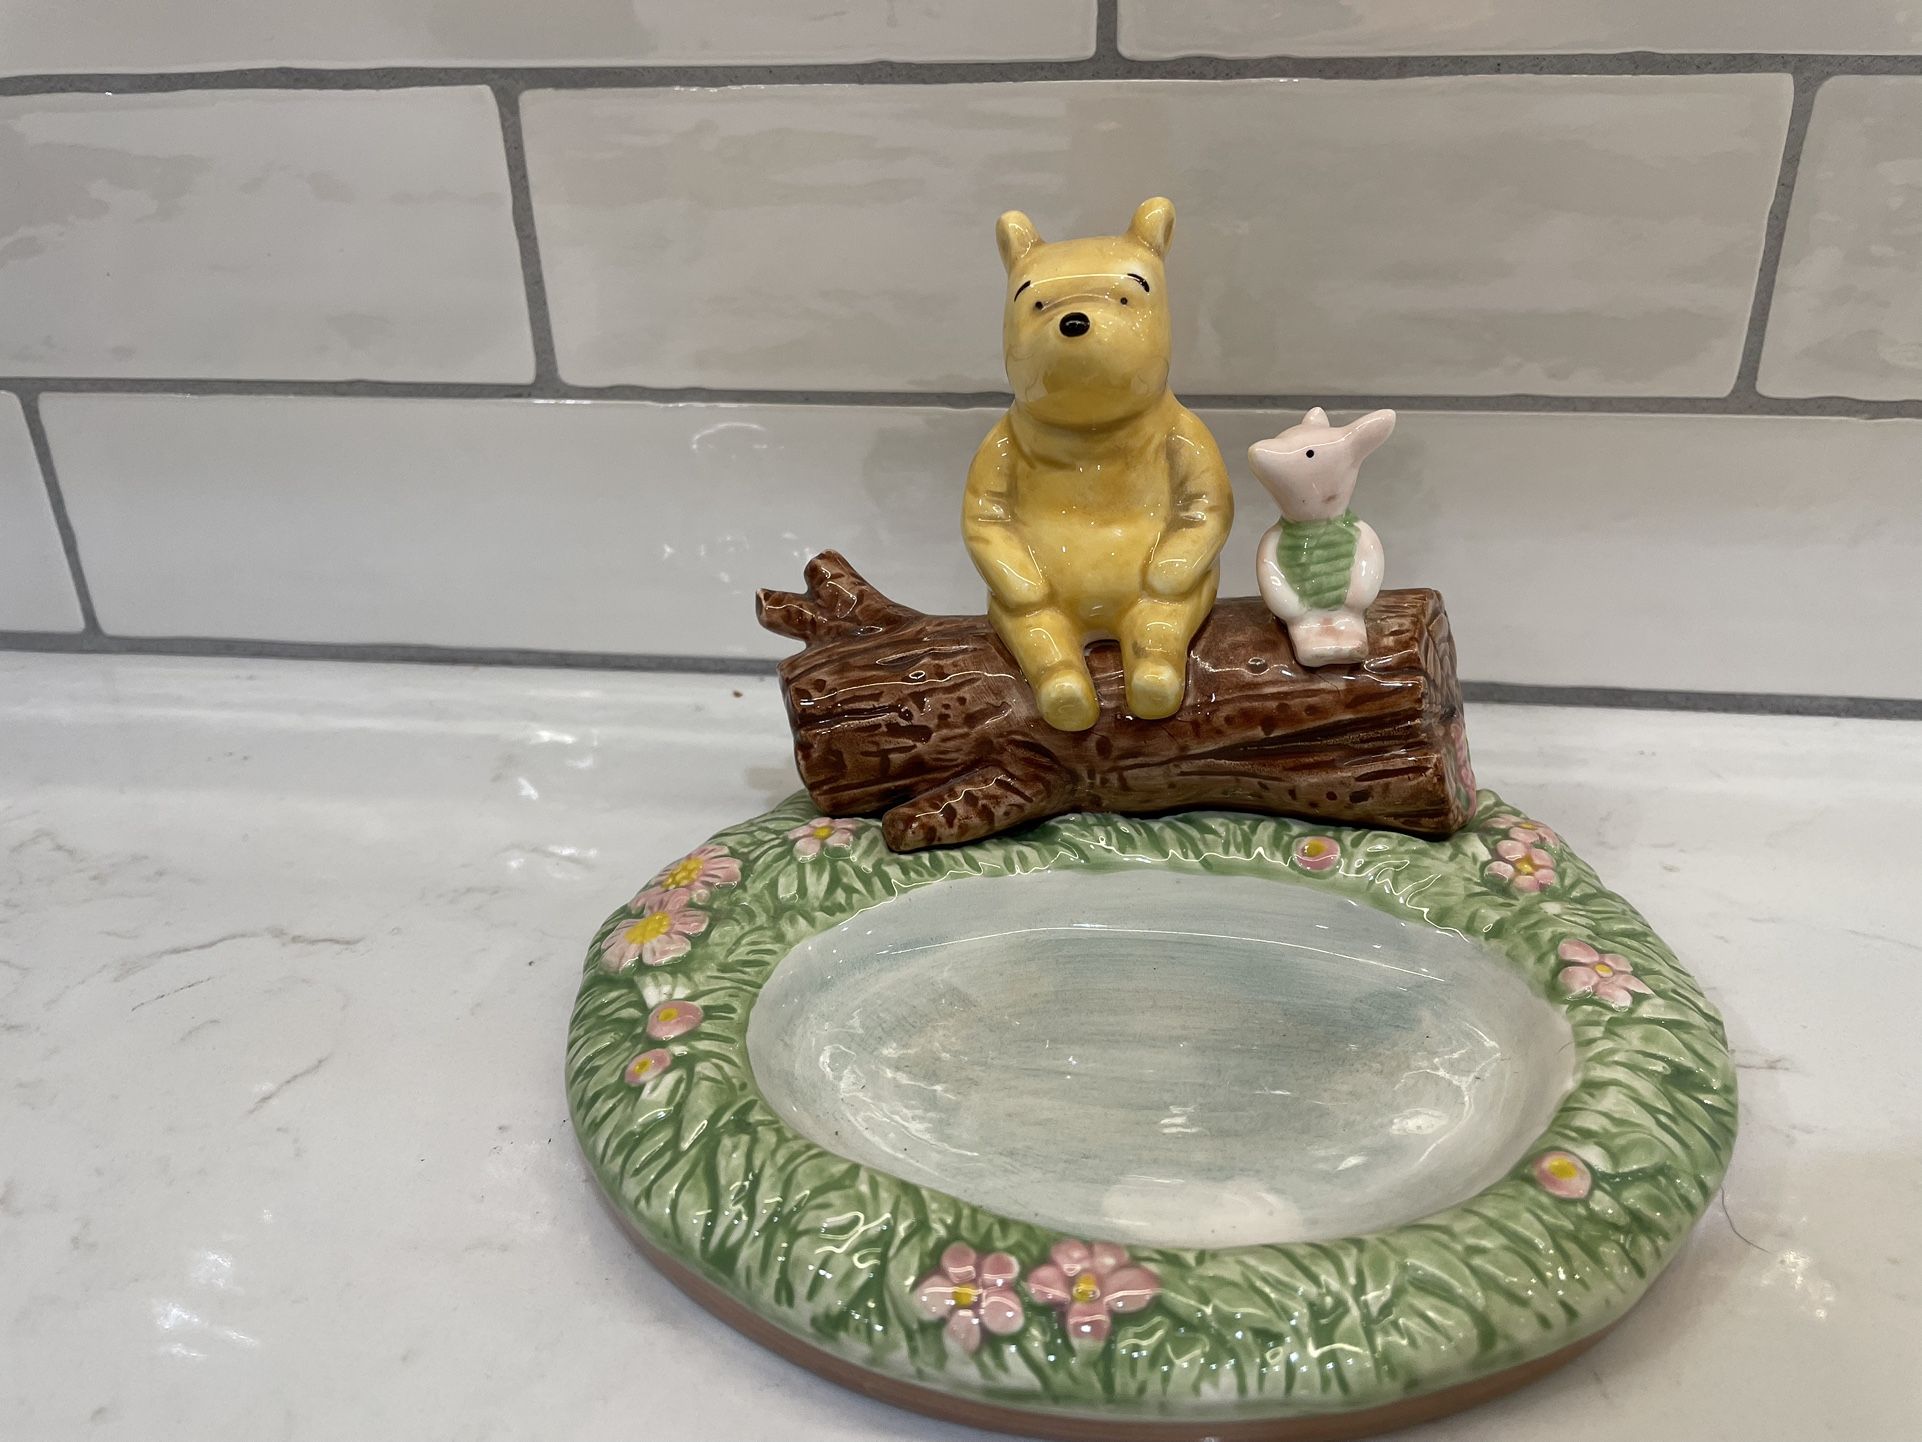 Winnie The Pooh Bathroom Set